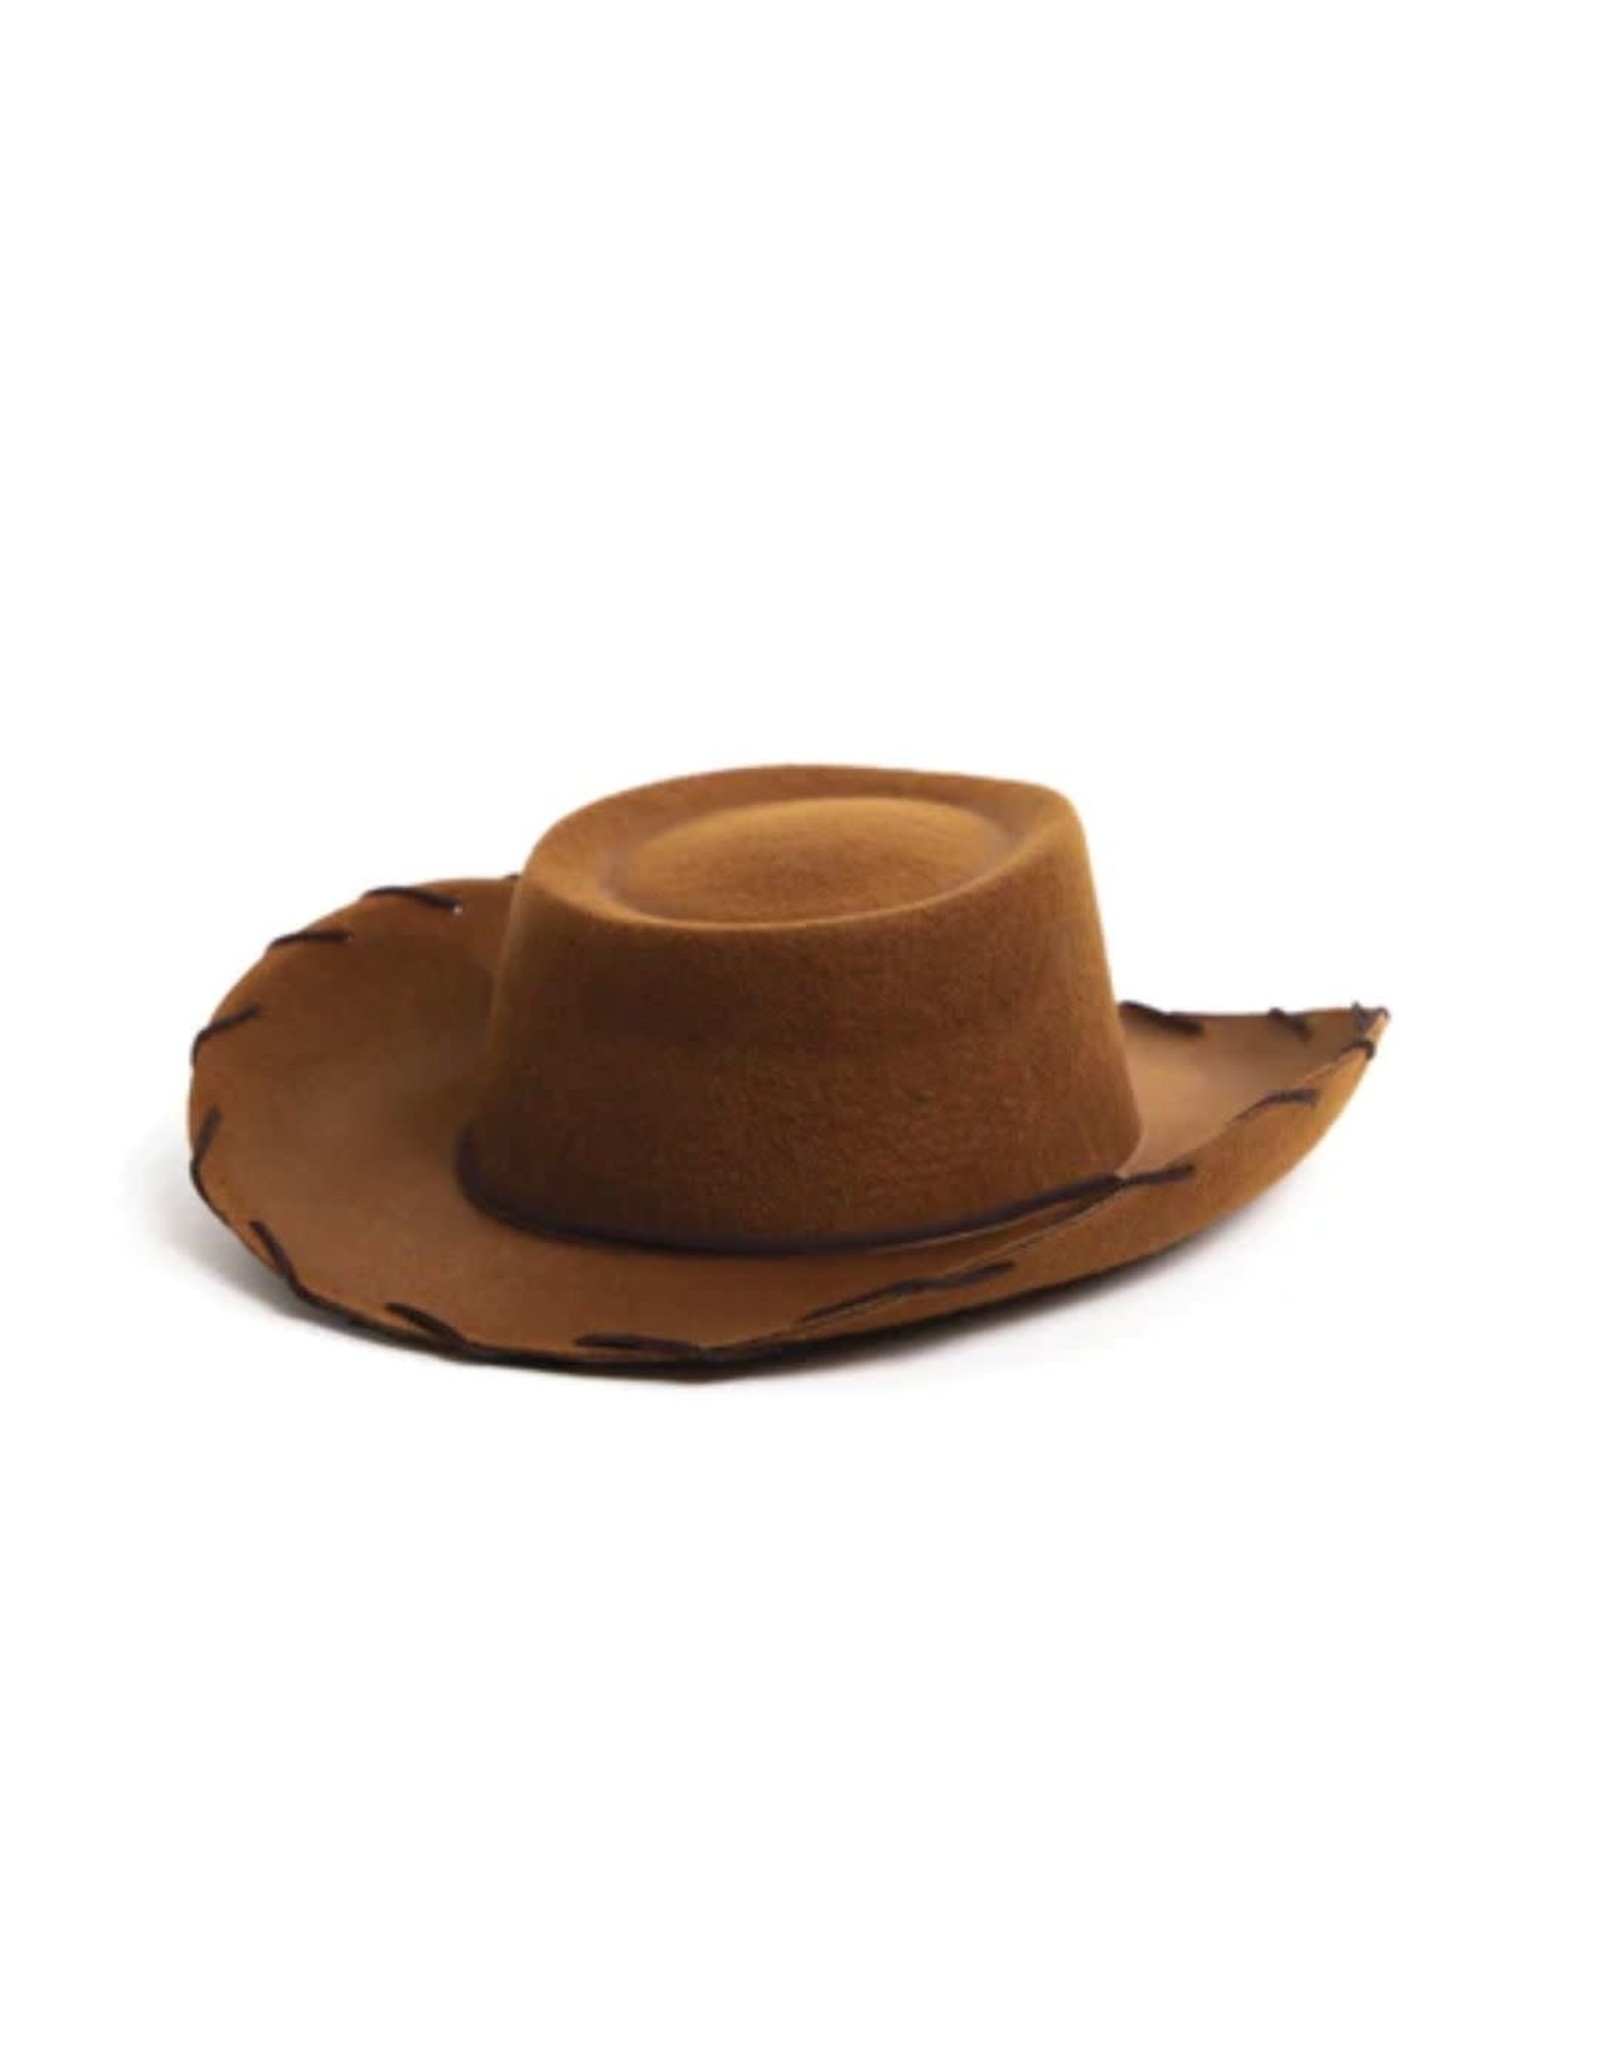 Little Adventures Cowboy Hat